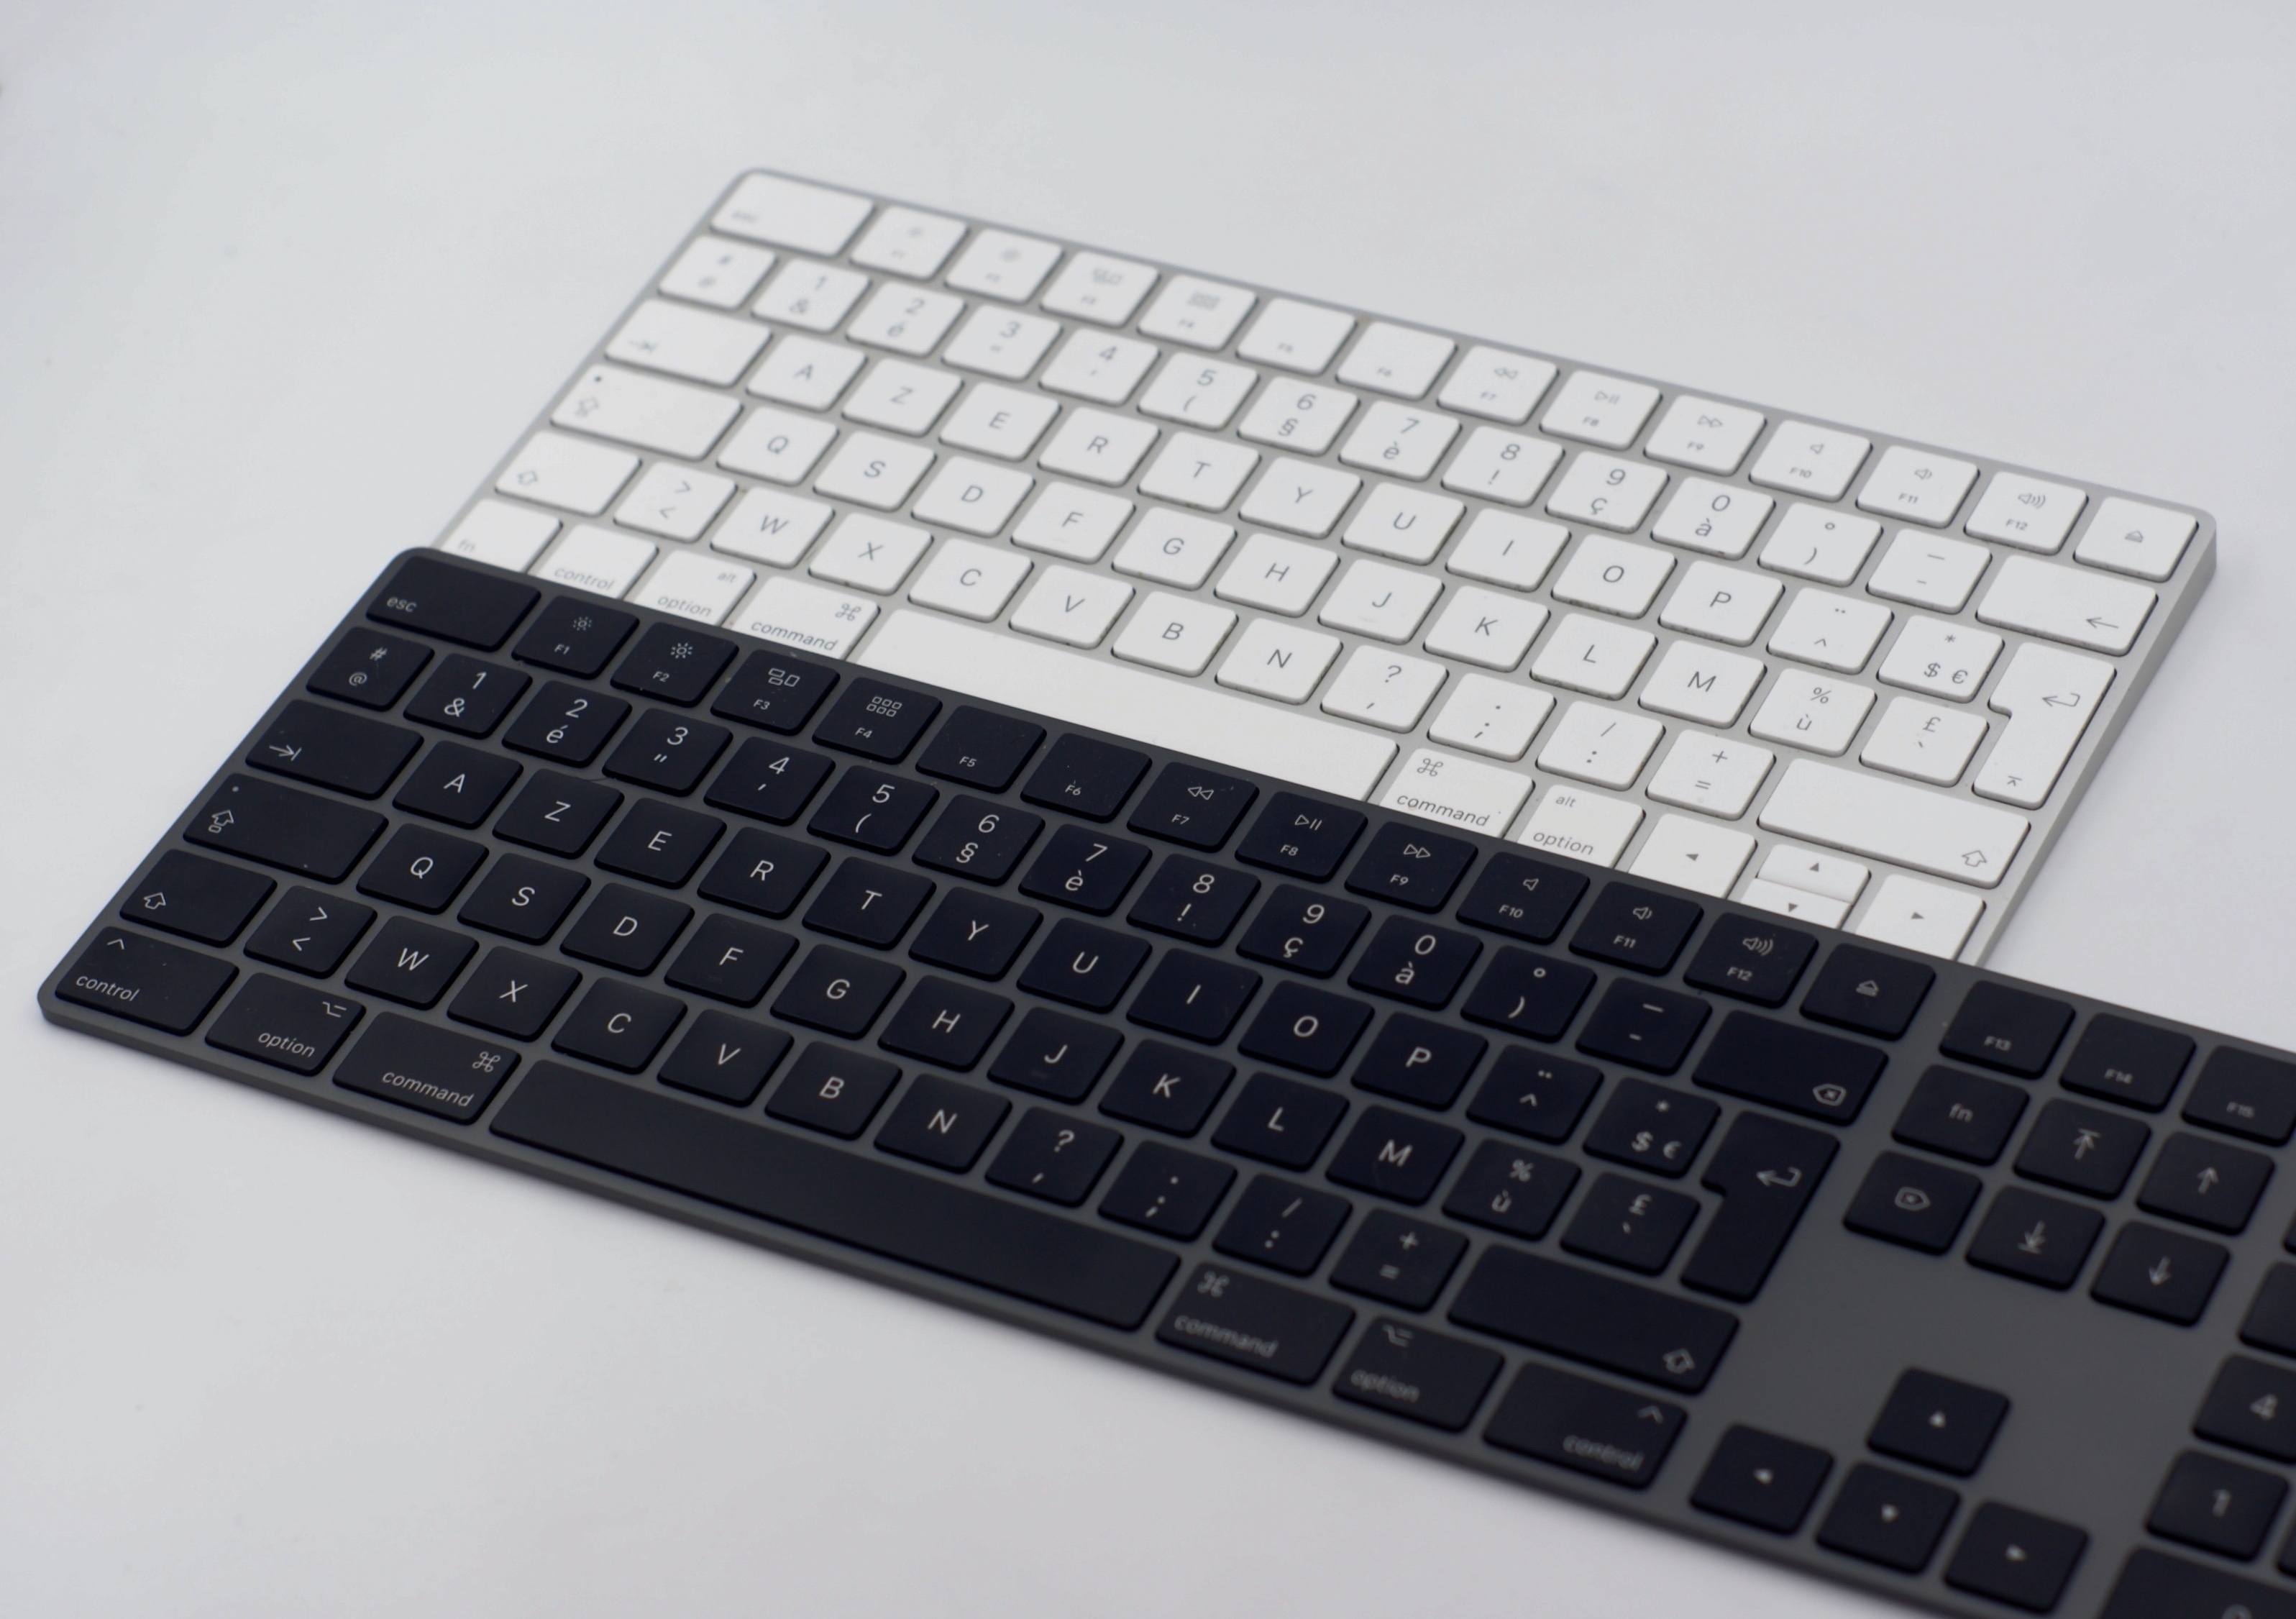 Finalement, Apple admet que l'ancien Magic Keyboard fonctionne